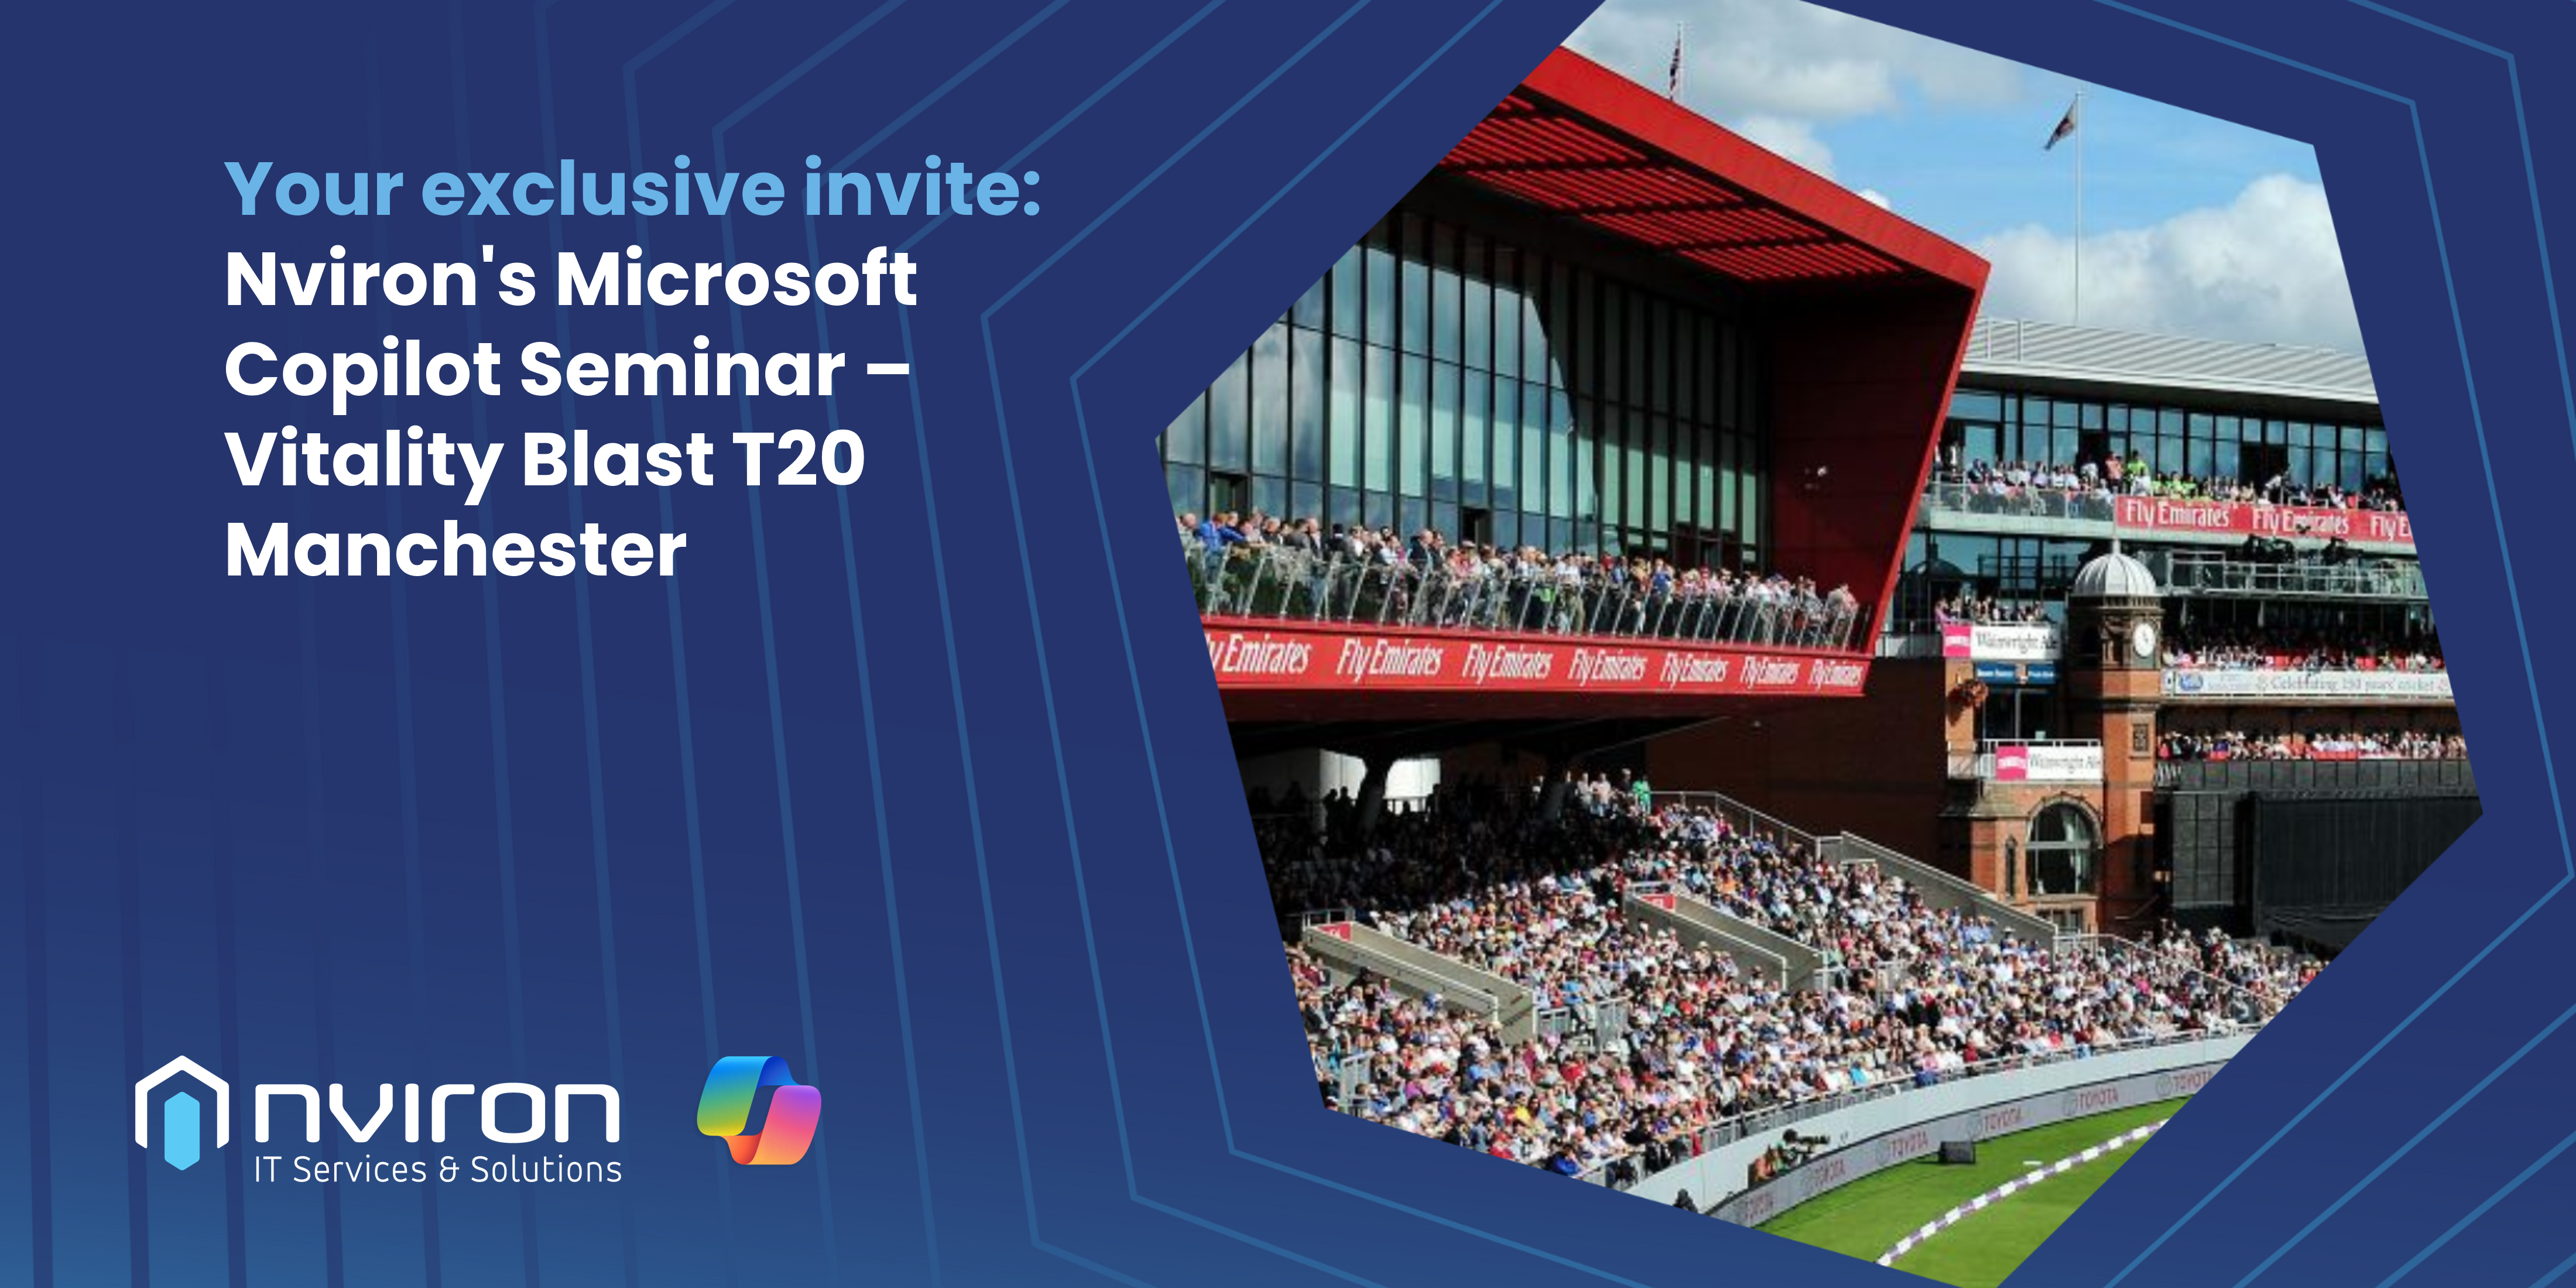 Your exclusive invite Nviron's Microsoft Copilot Seminar T20 Cricket Manchester